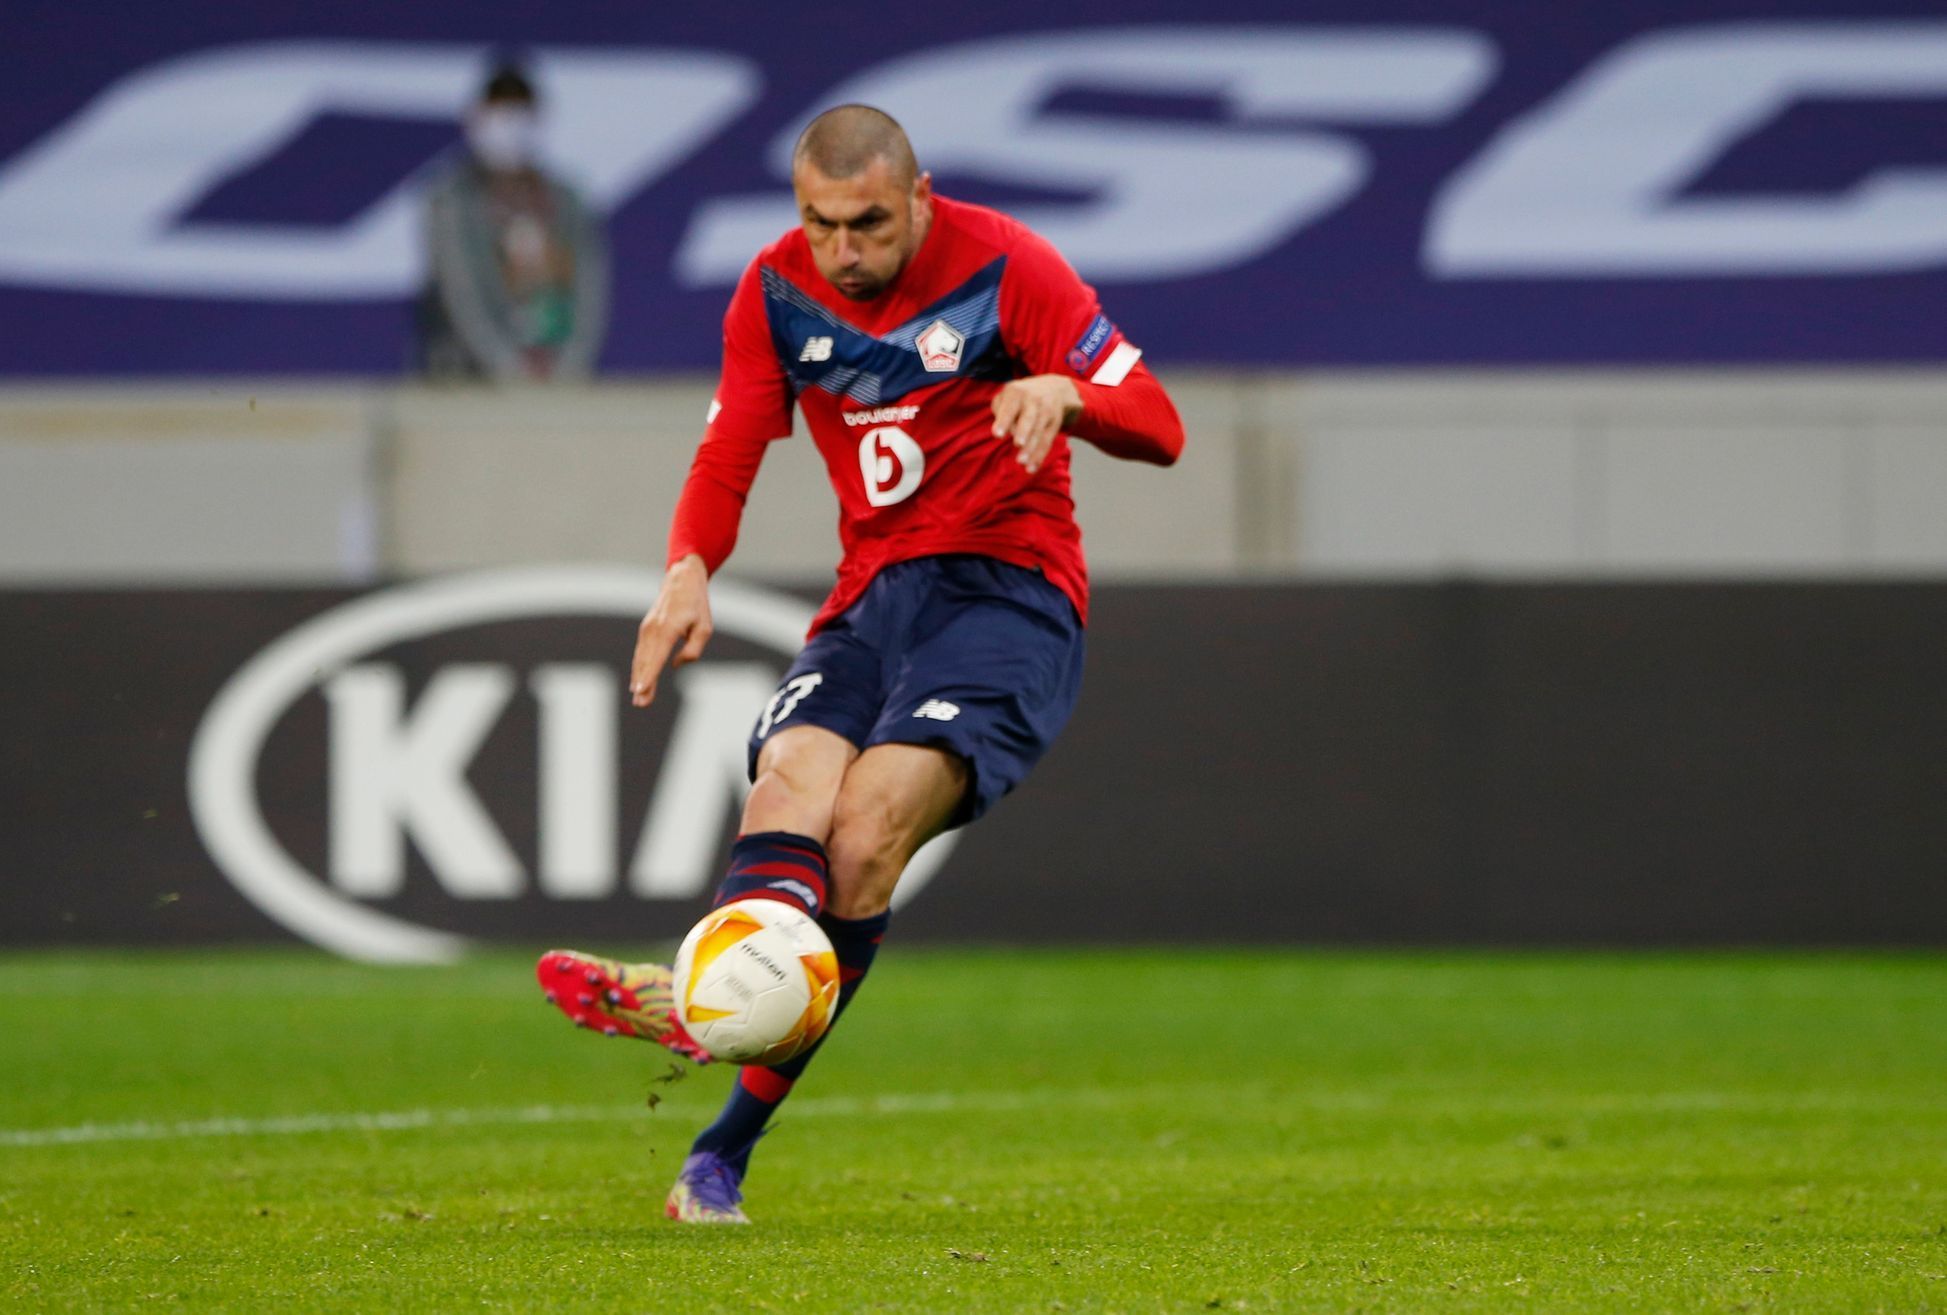 Burak Yilmaz dává gól v zápase Evropské ligy Lille - Sparta